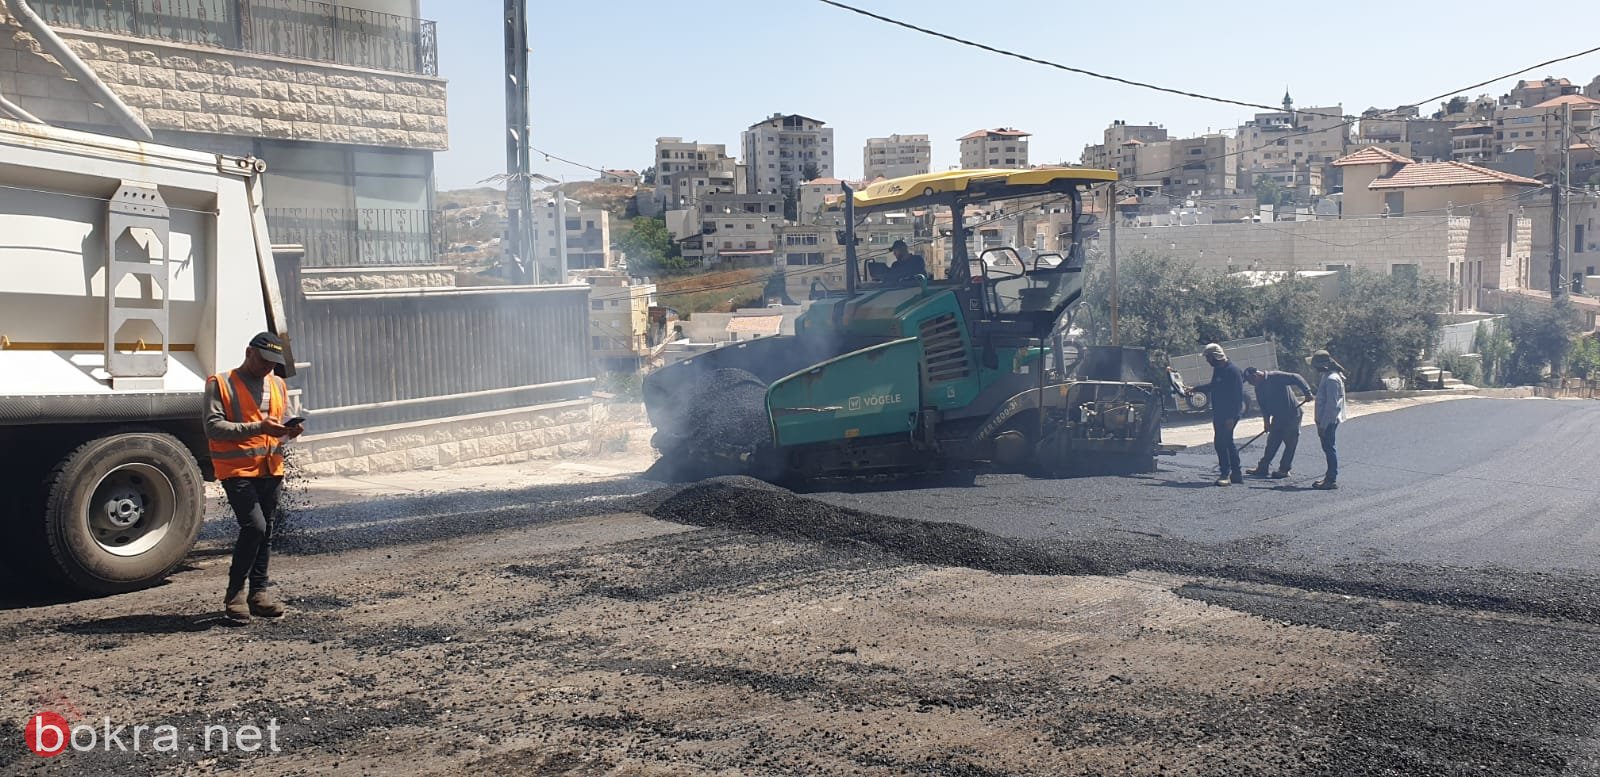 الناصرة: مشروع تعبيد شوارع المدينة يبدأ...حي البشارة يعبد اليوم-16